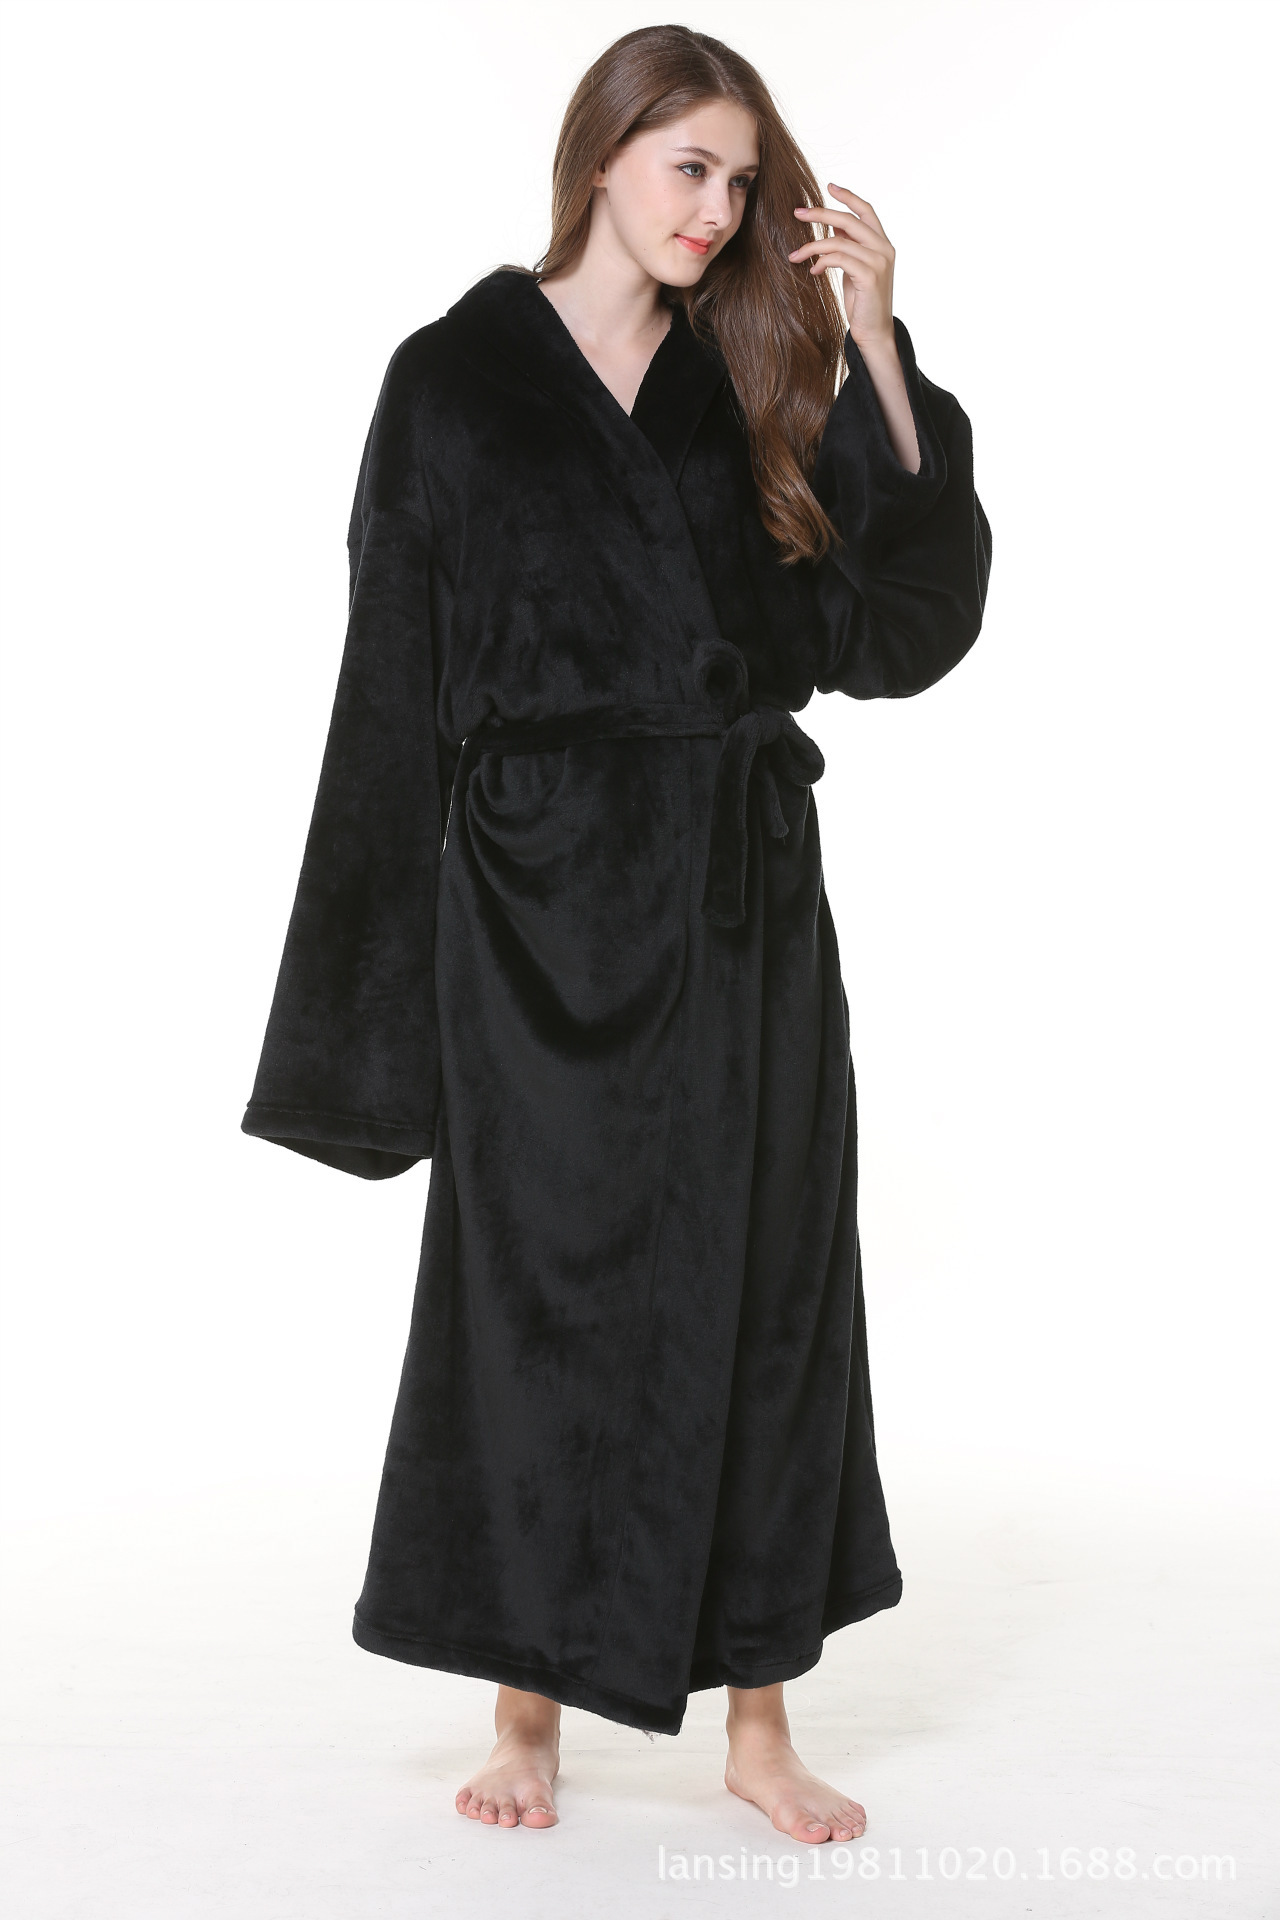 夏季新款睡袍女性感睡衣吊带睡裙外袍两件套韩版冰丝绸家居服-阿里巴巴